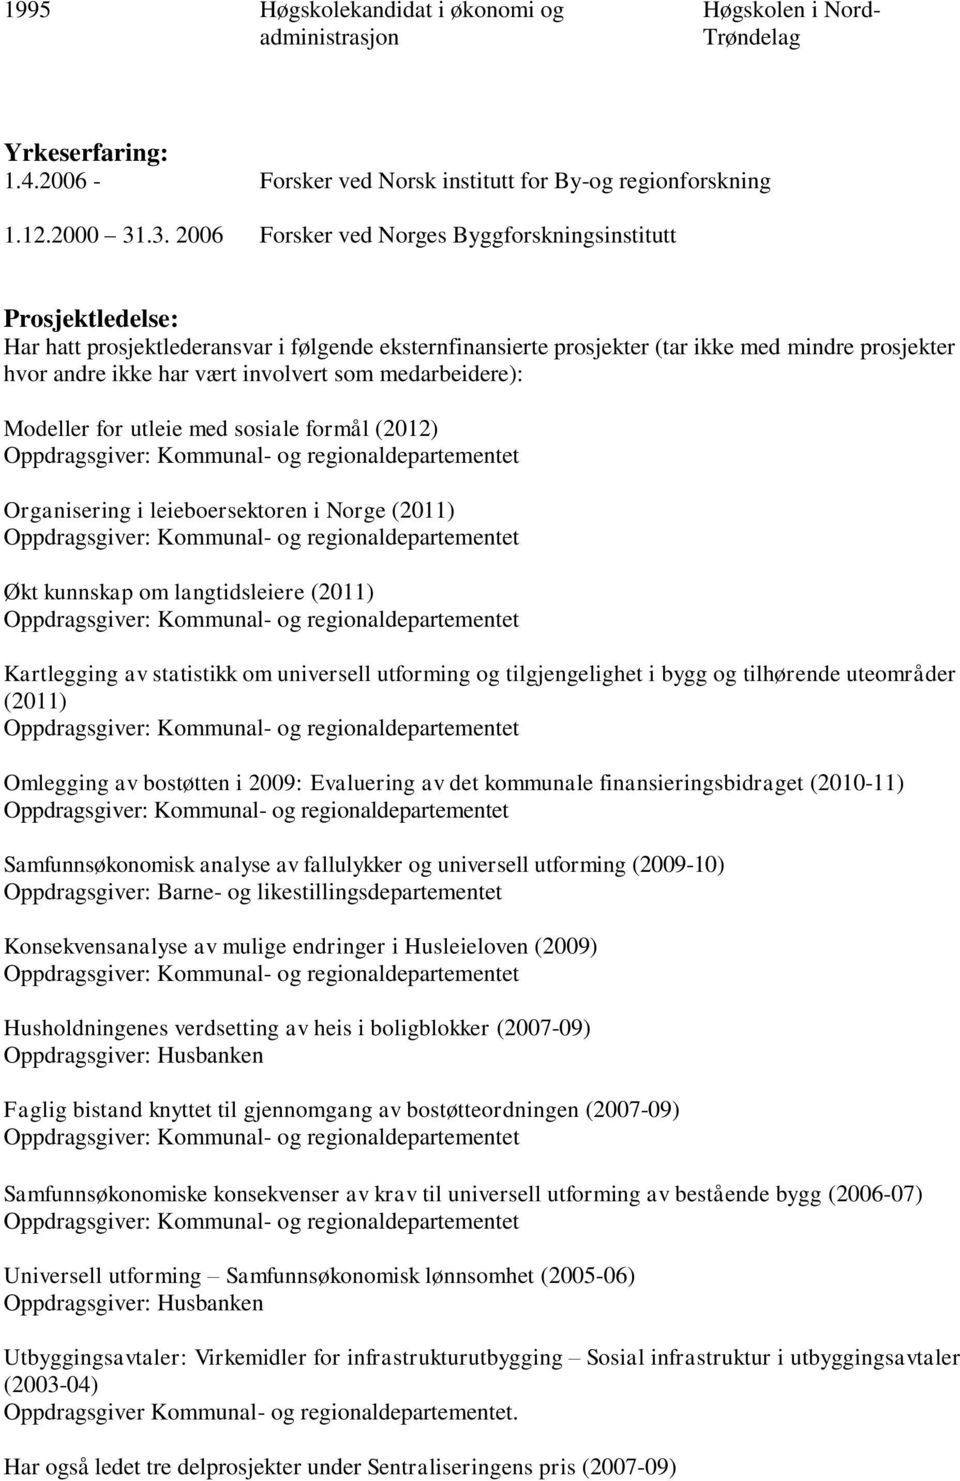 involvert som medarbeidere): Modeller for utleie med sosiale formål (2012) Organisering i leieboersektoren i Norge (2011) Økt kunnskap om langtidsleiere (2011) Kartlegging av statistikk om universell